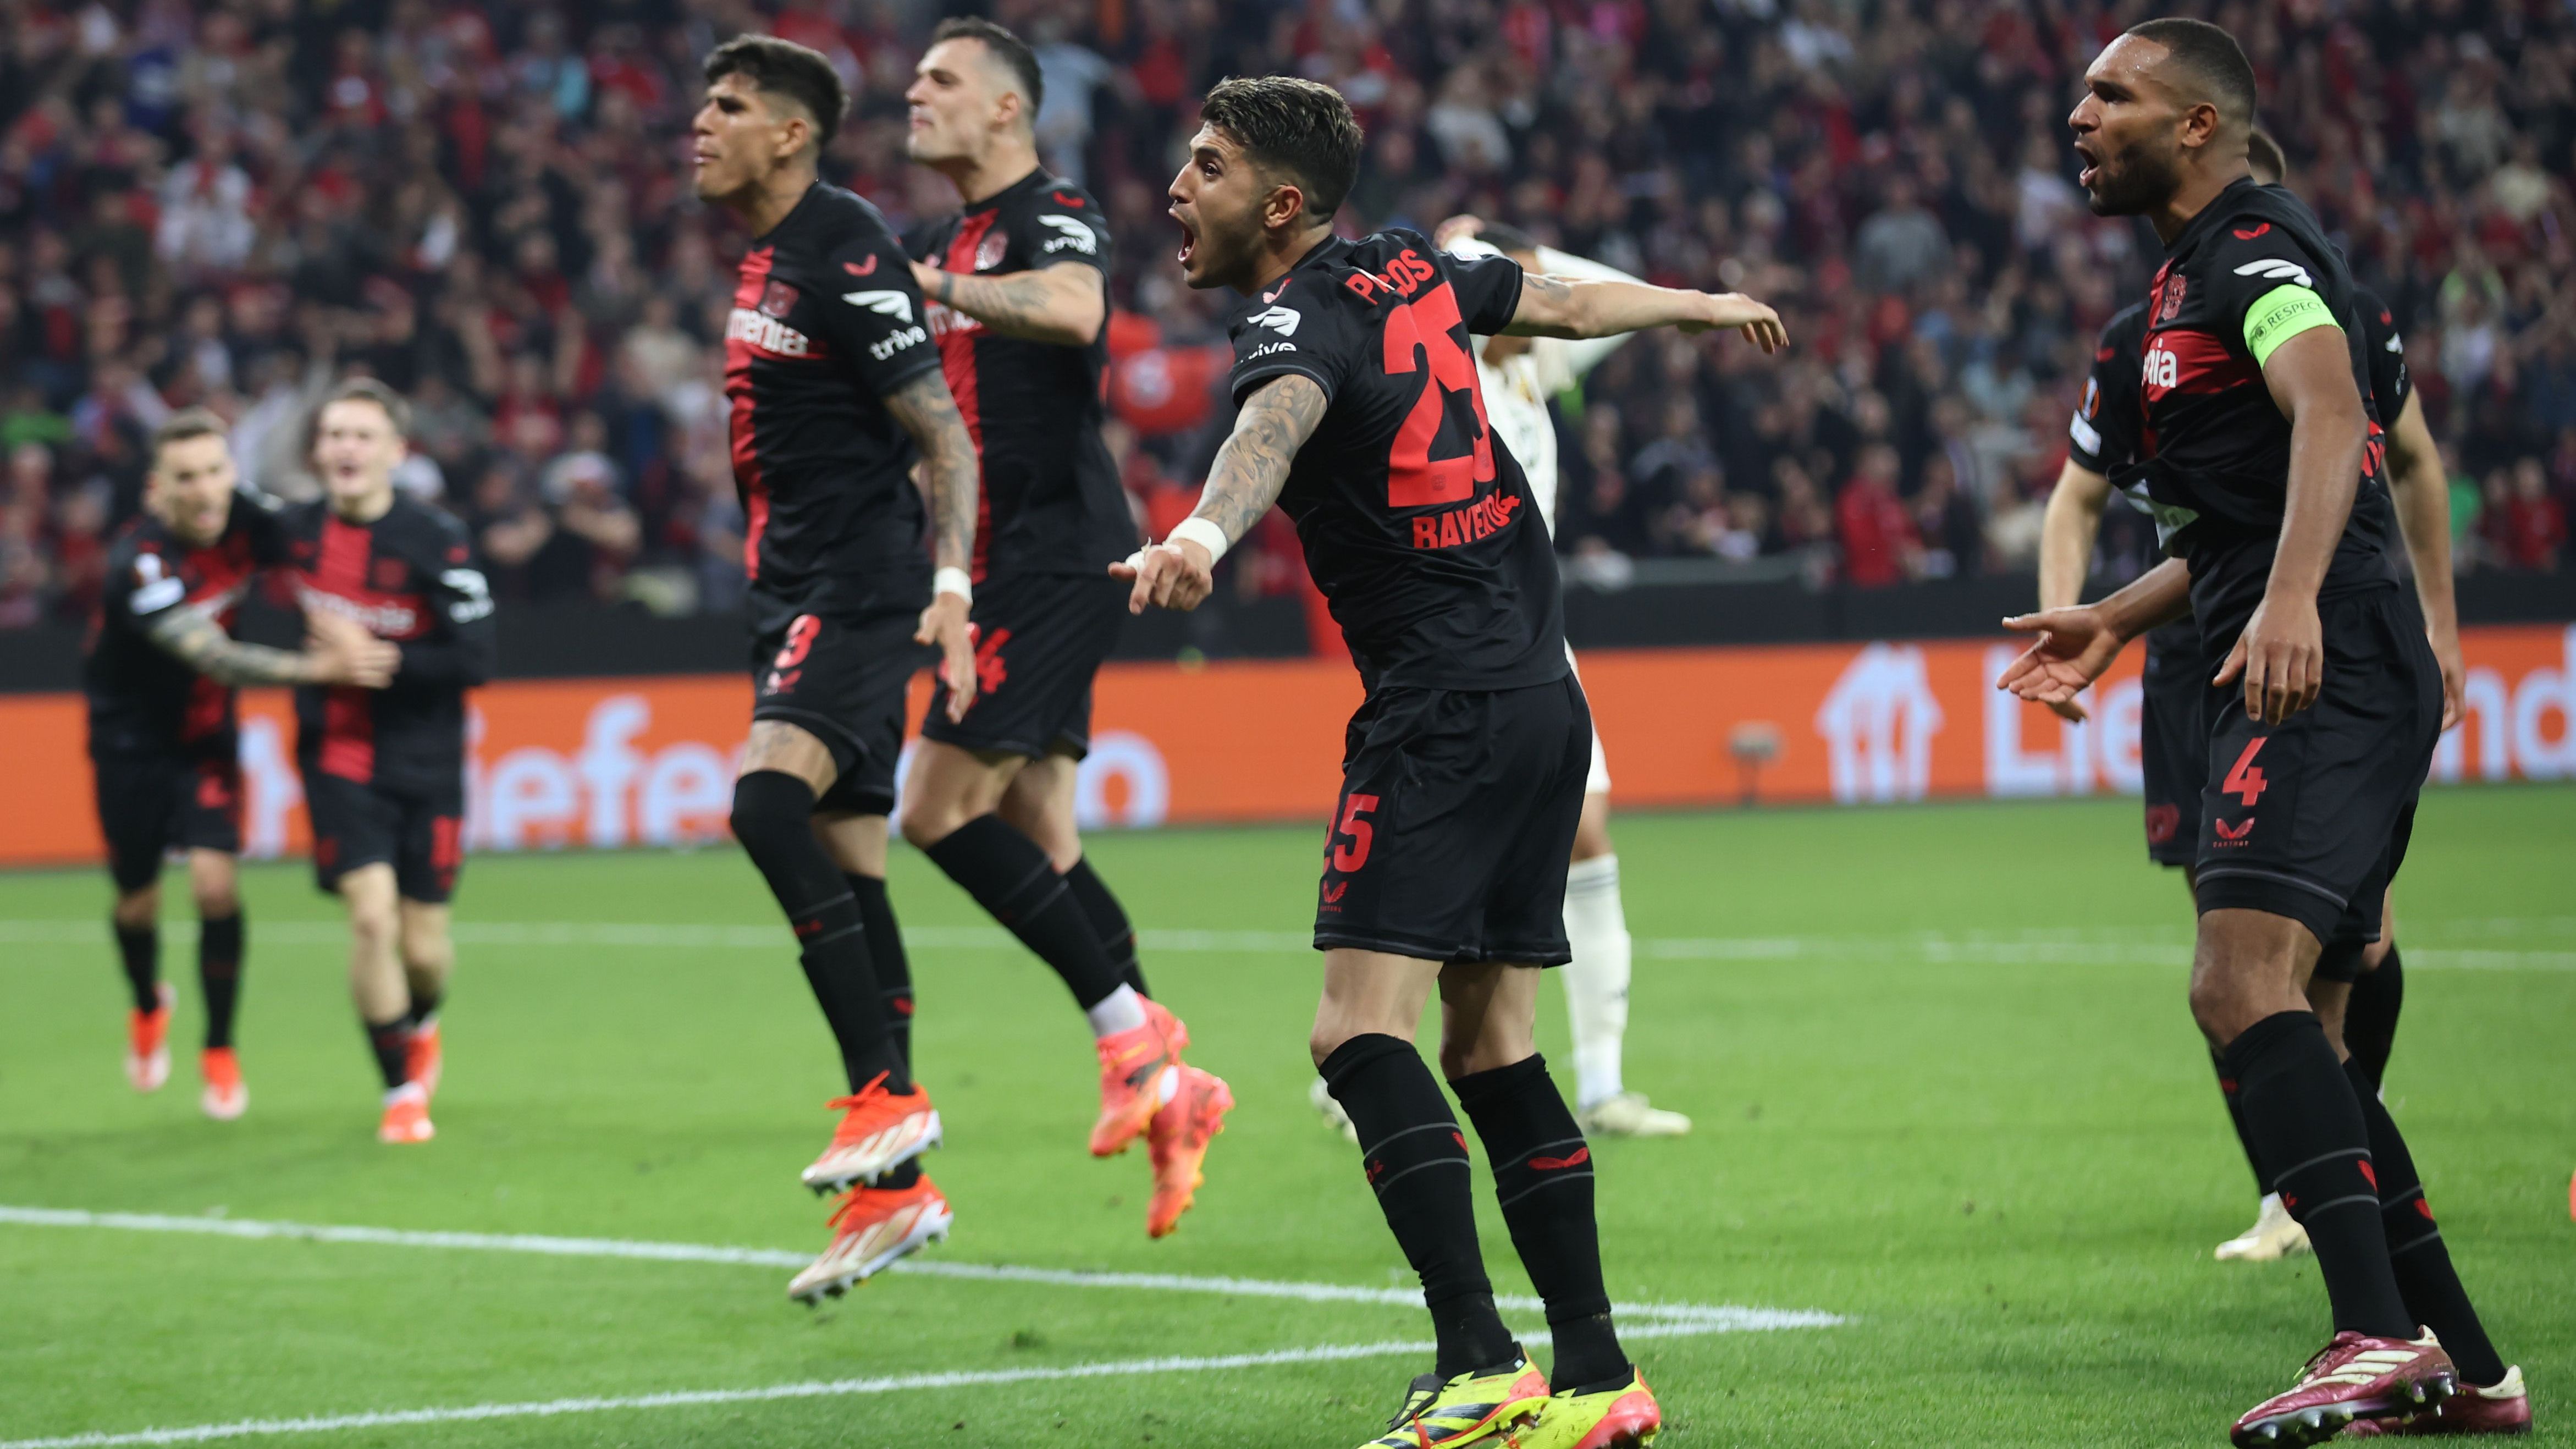 <strong>Leverkusen wieder mit Last-Minute-Tor</strong><br>Bayer Leverkusen hat sich in das Finale der Europa League gekämpft. Ein 2:2 gegen die AS Rom reichte für den Einzug in das Endspiel. Dabei holte die Werkself wieder spät einen 0:2-Rückstand auf. Wir haben den Meister im Halbfinal-Rückspiel benotet.